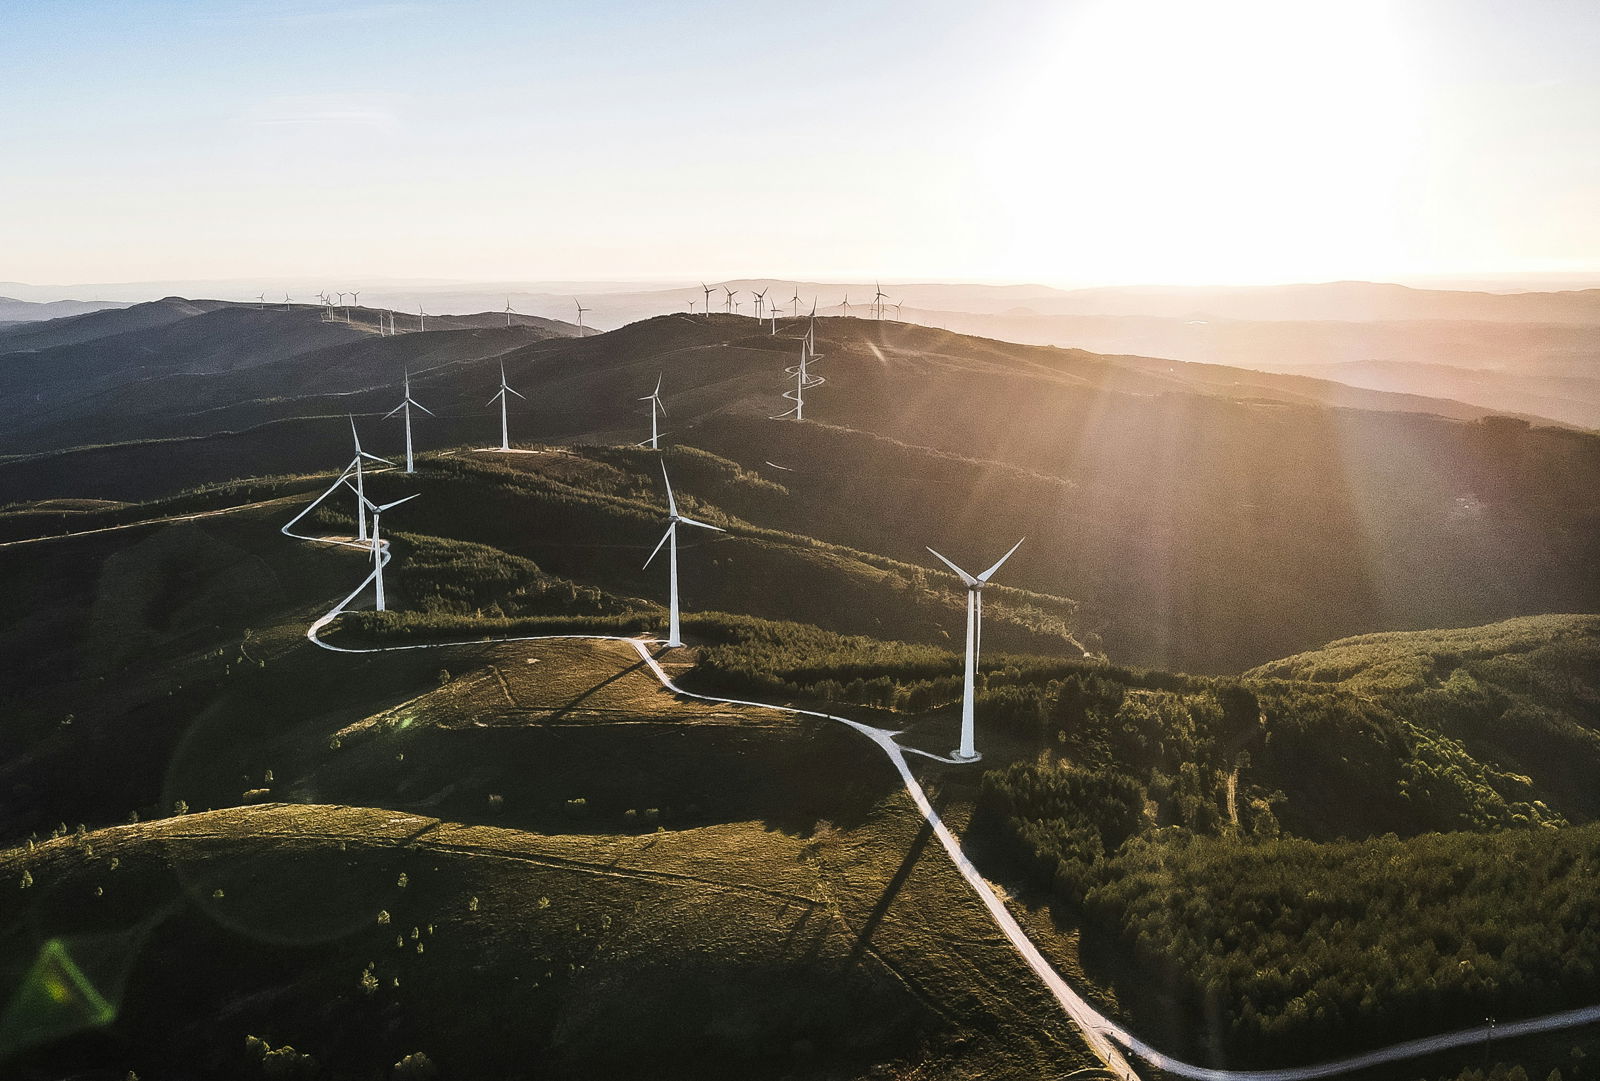 Land-based wind turbines